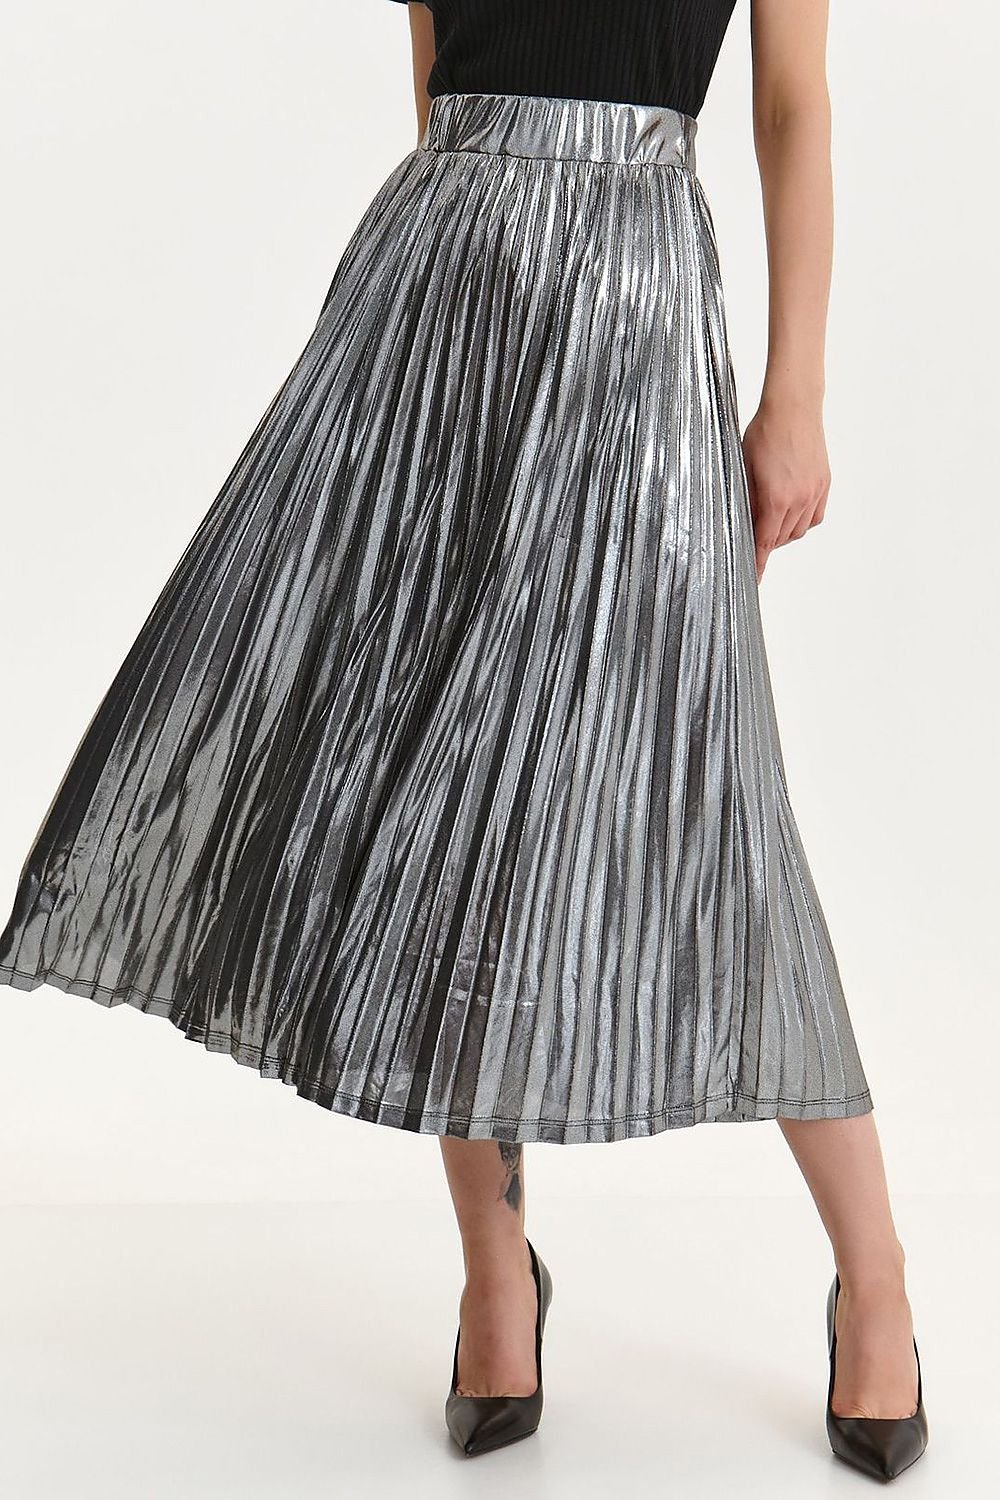 Jupe longue plissée argentée mi-longue en tissu satiné brillant, idéale pour une tenue de soirée élégante et moderne.